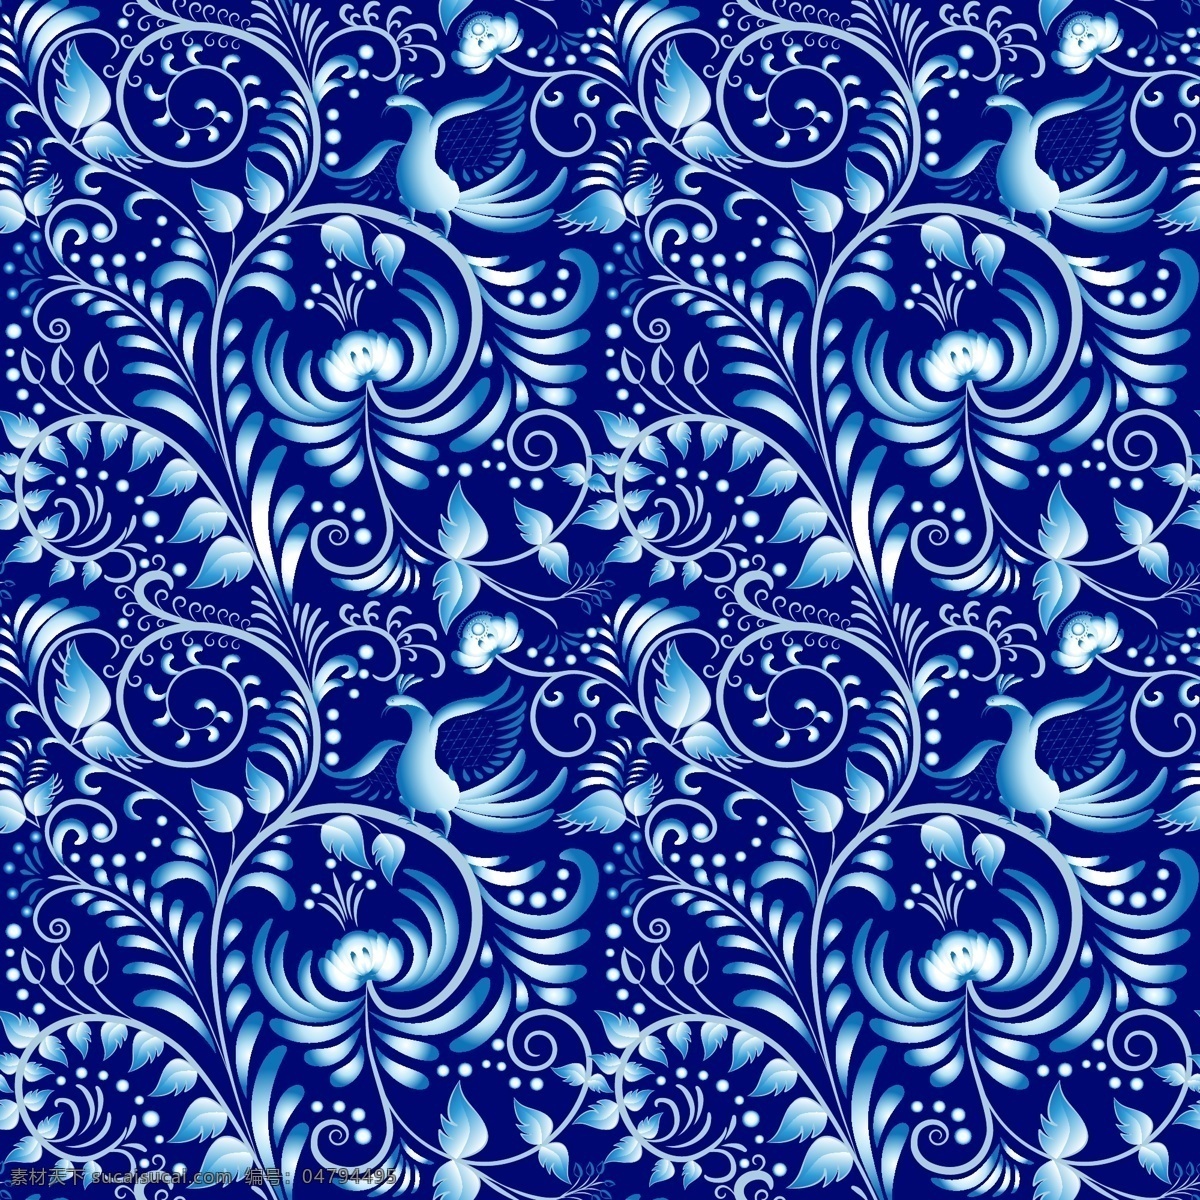 蓝色 复古 青花瓷 纹样 矢量 简约 花朵 花纹 矢量素材 手绘 卡通 平面设计素材